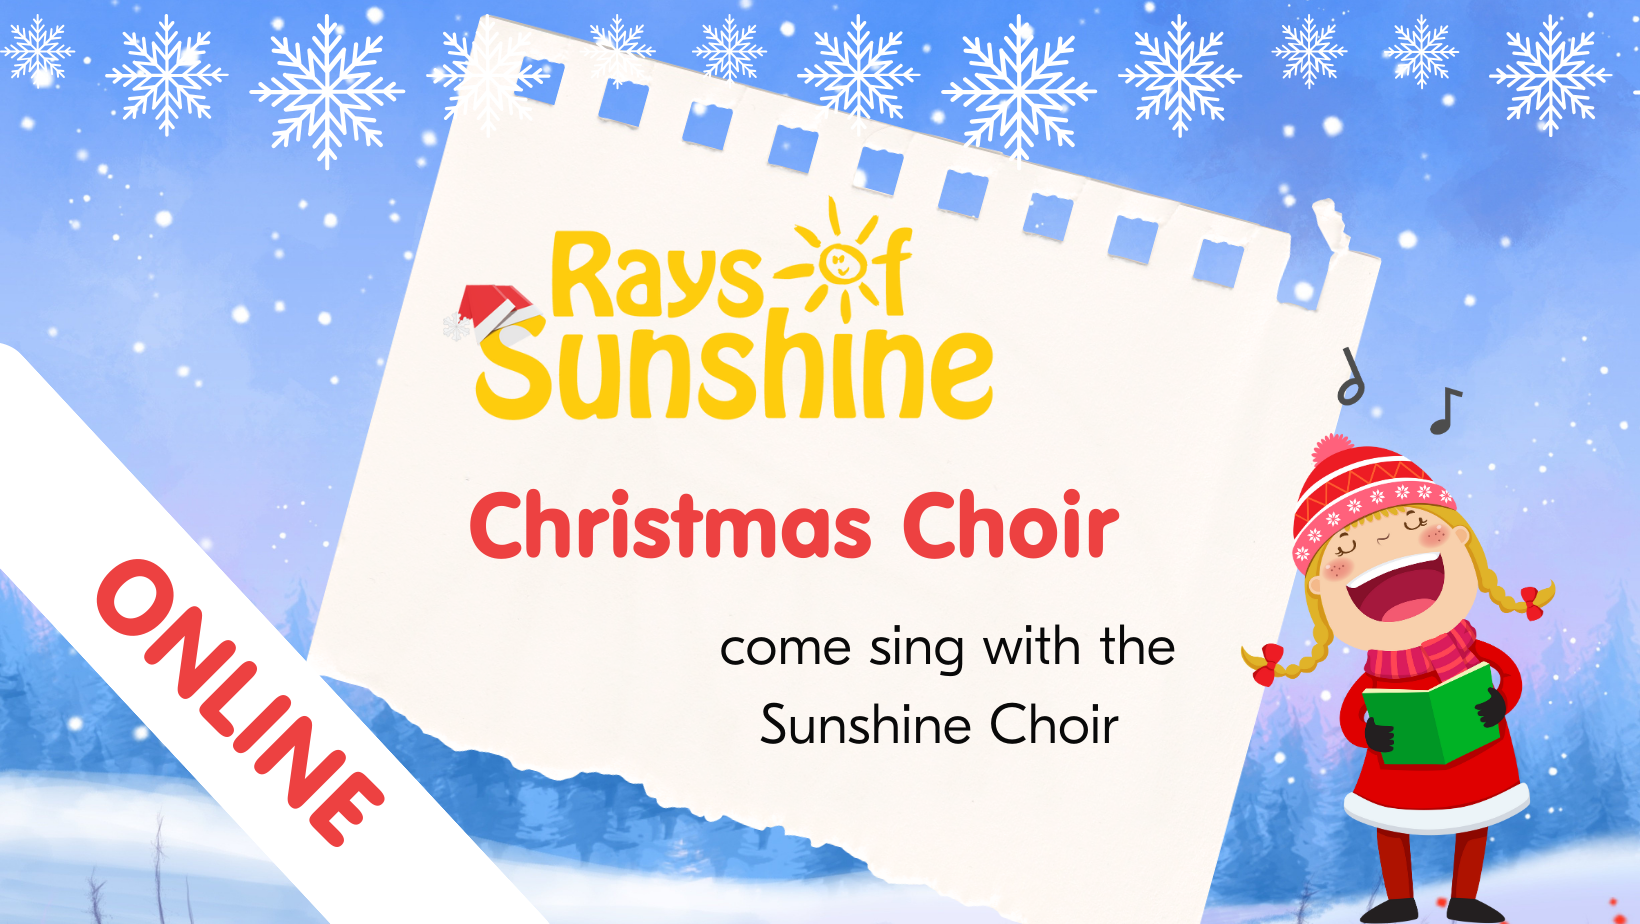 Online Christmas Choir with Christmas Rays of Sunshine logo